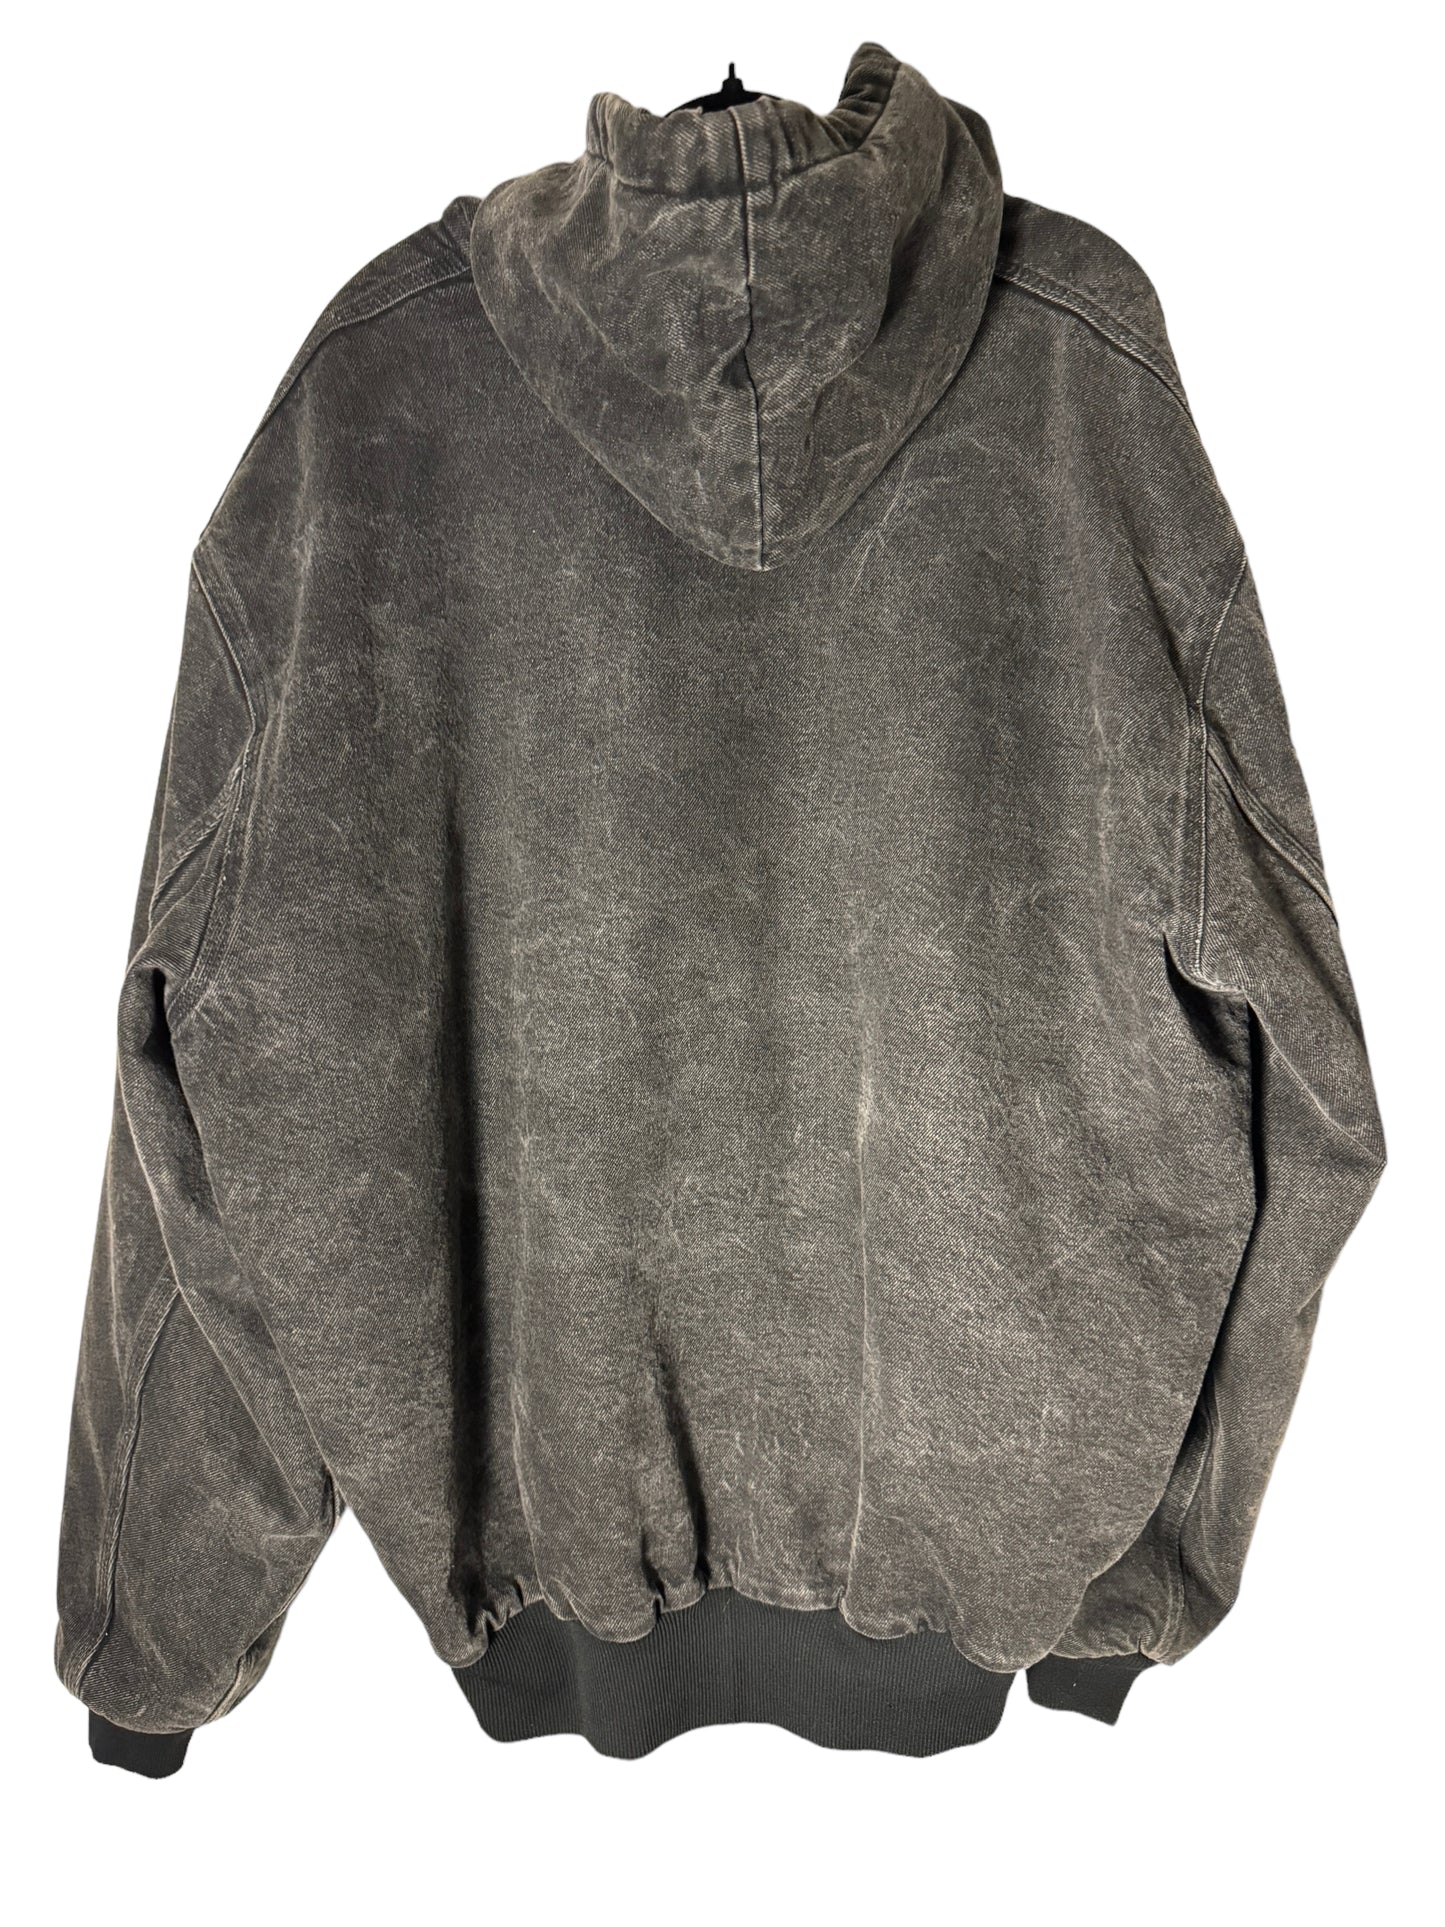 Vintage Black Denim Blanket Lined Carhartt Jacket